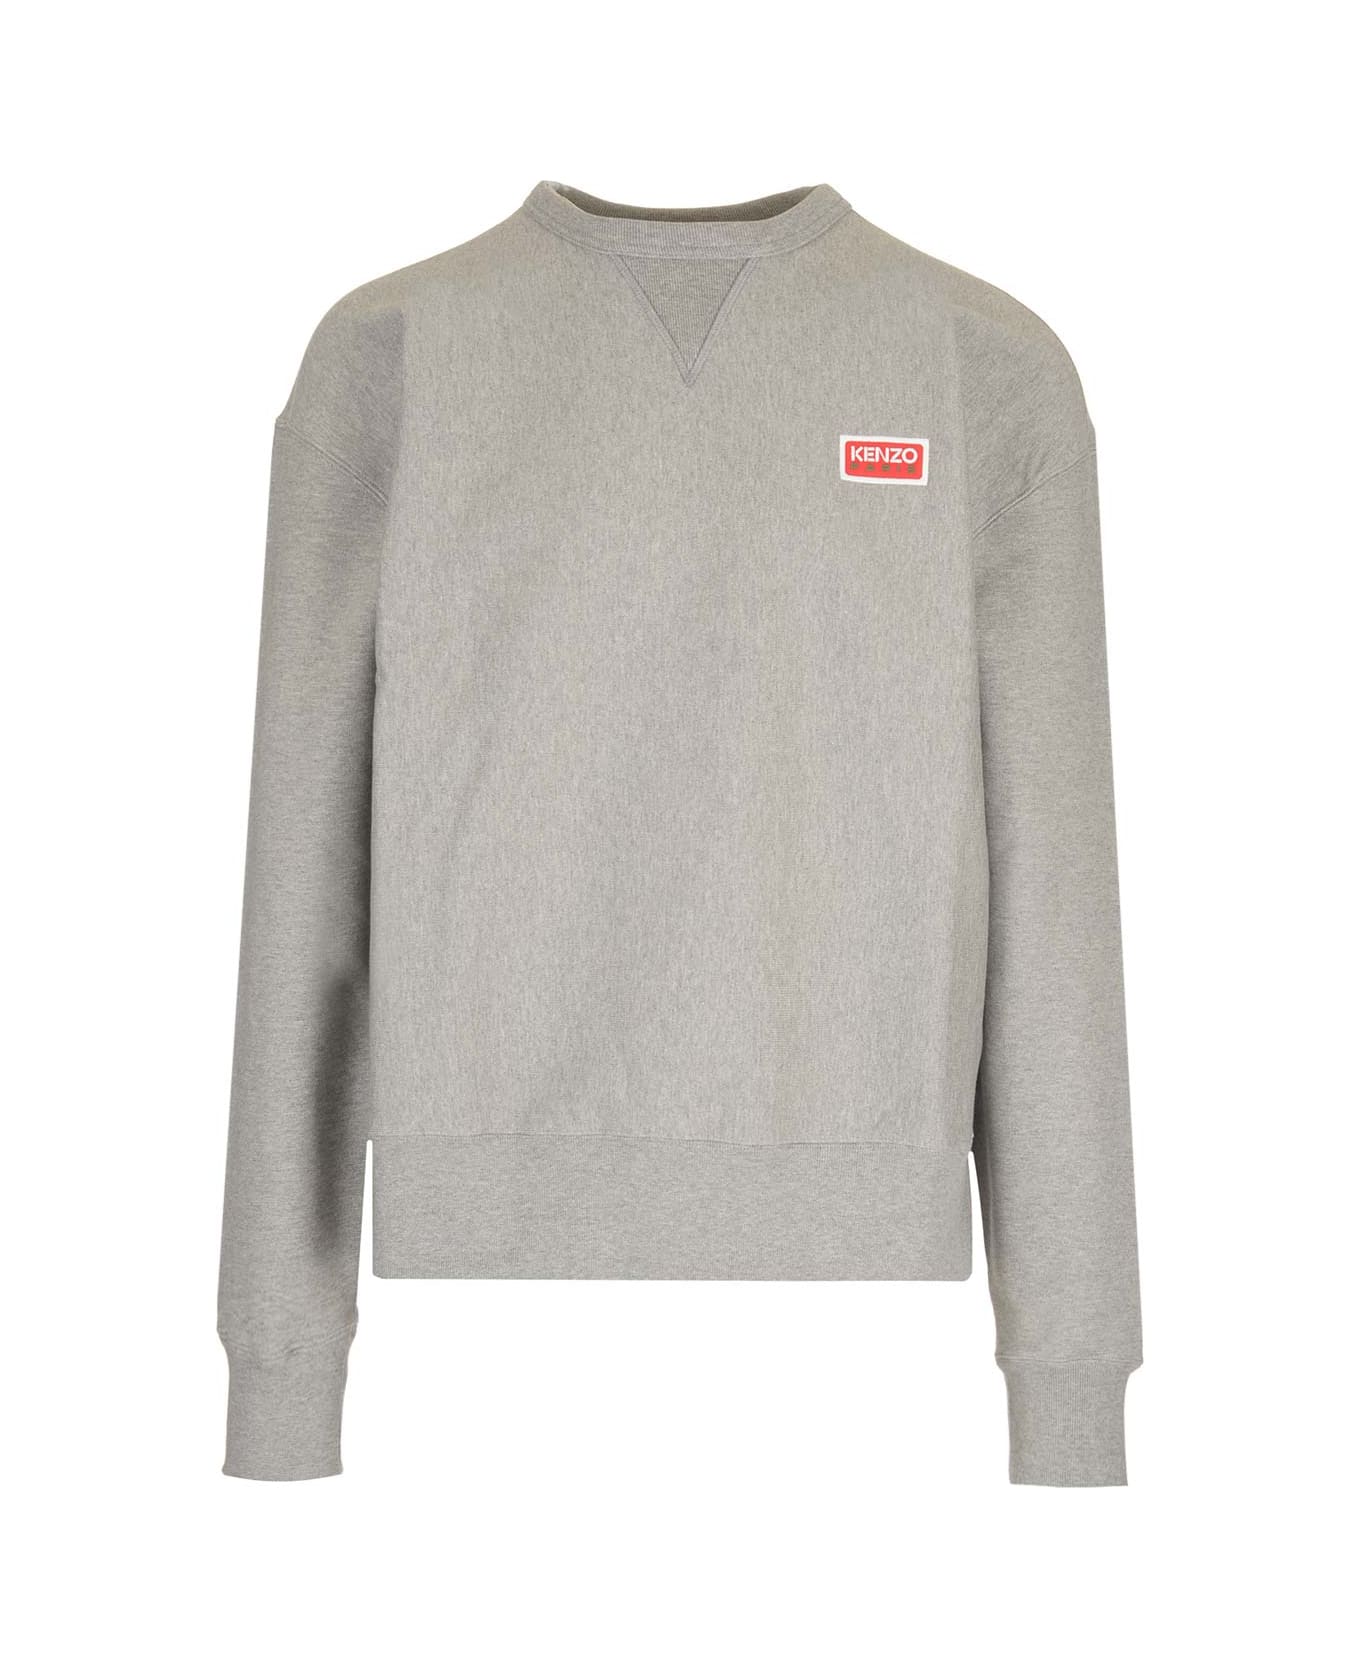 Kenzo Sweatshirt With Logo - Grey